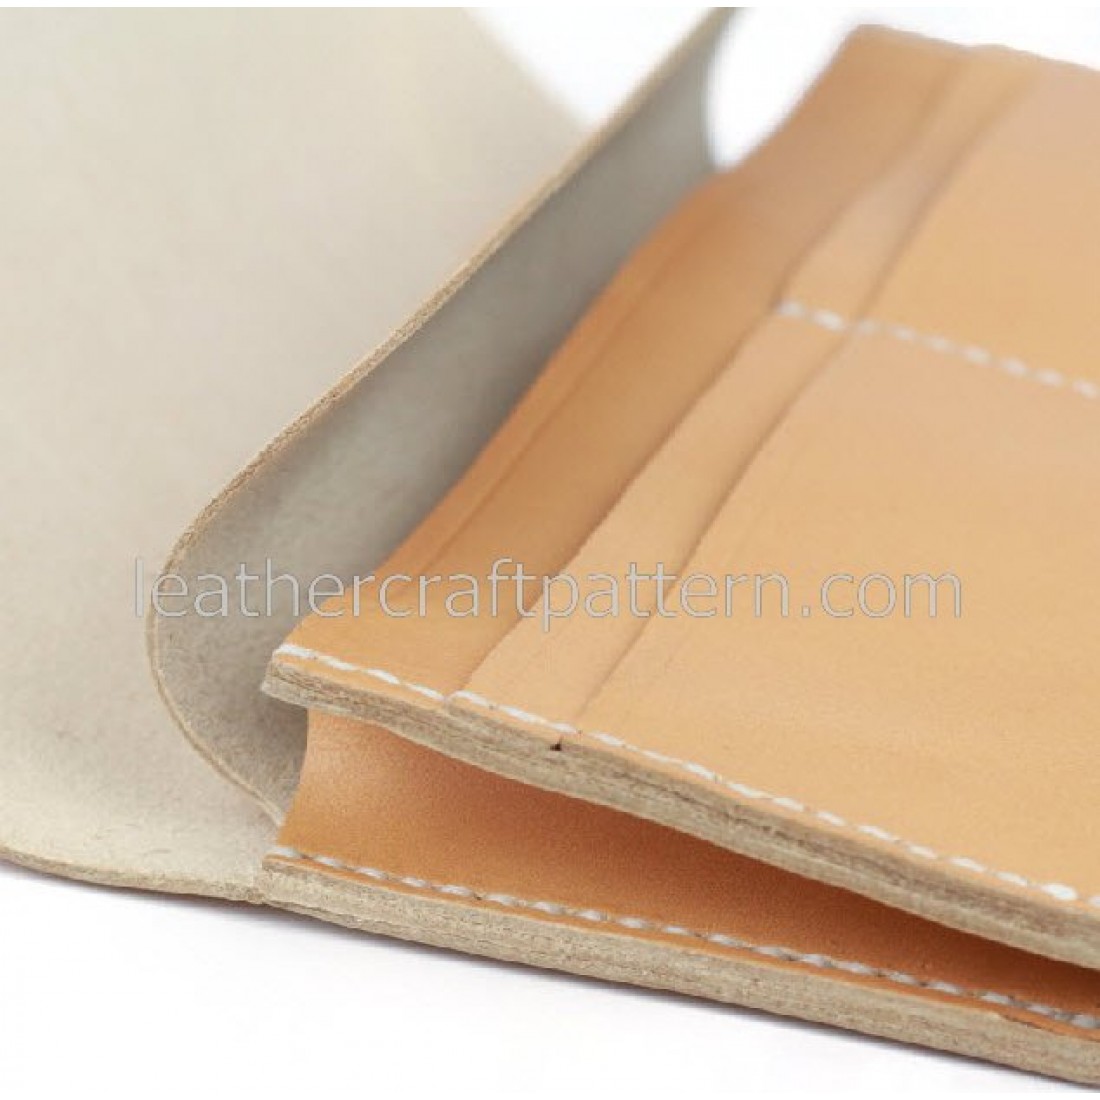 Leather wallet pattern, long wallet pattern, PDF download, leather art ...